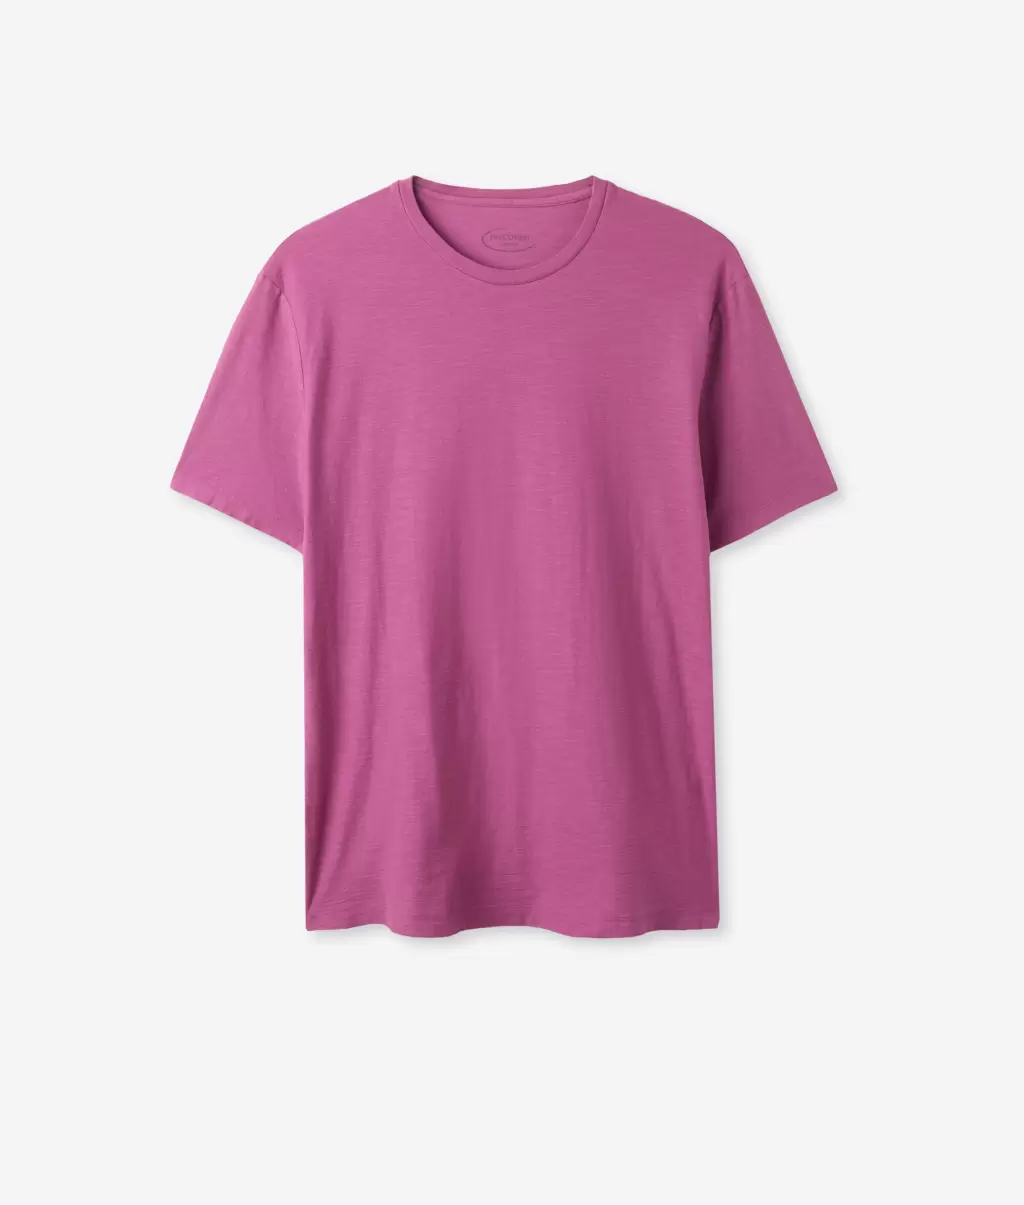 Homem Falconeri T-Shirts E Polos T-Shirt Em Algodão Twist Pink - 4